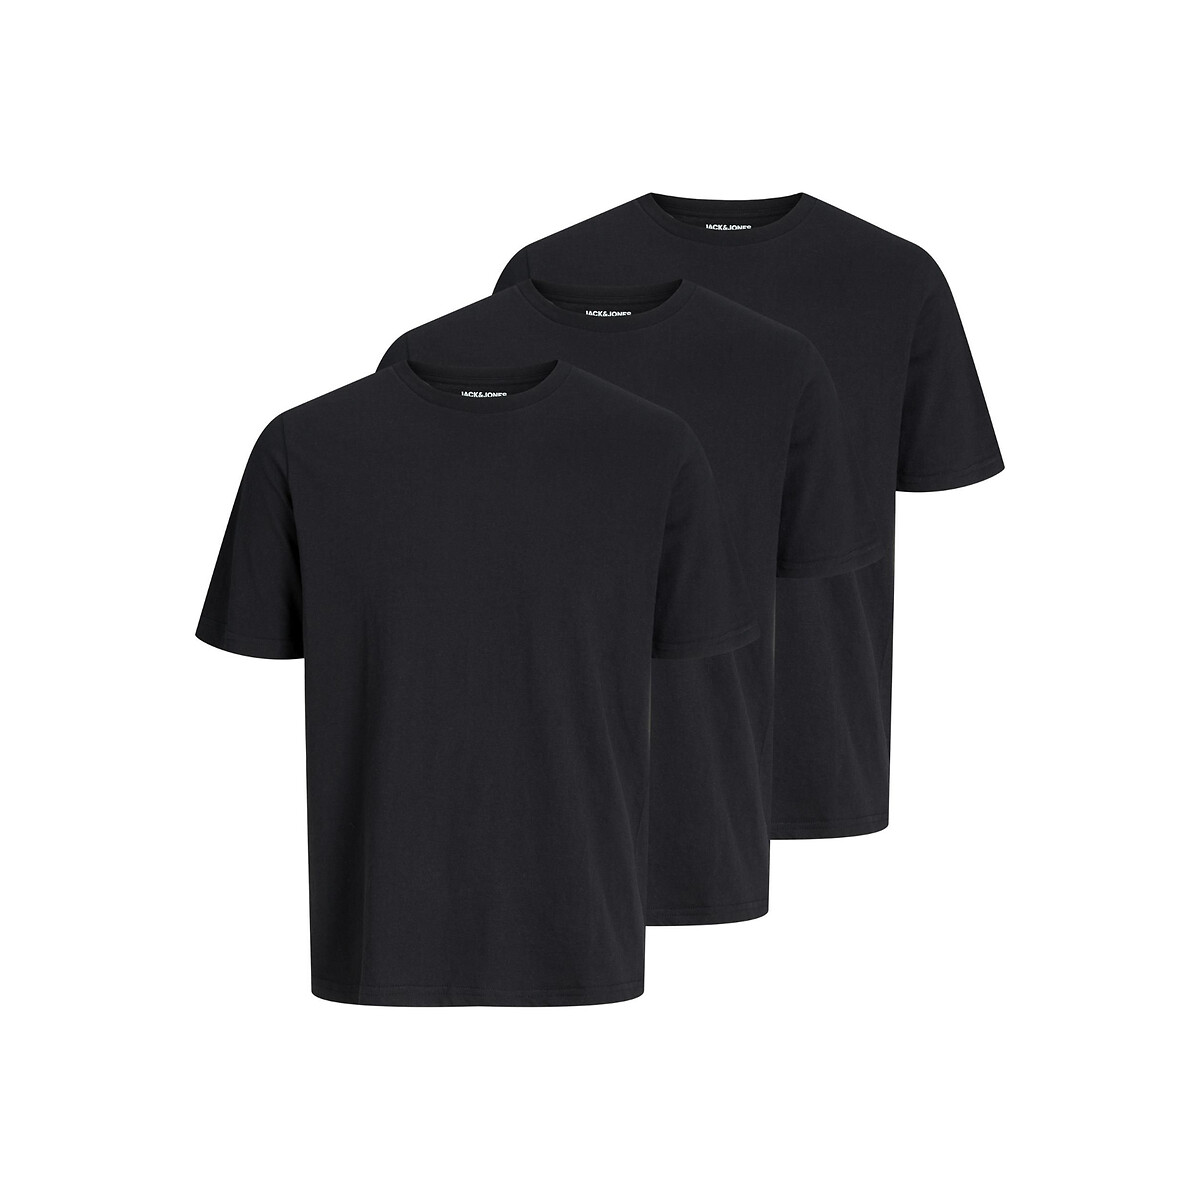 Комплект из трех футболок с круглым вырезом XL черный комплект из трех футболок bless с круглым вырезом reiss белый